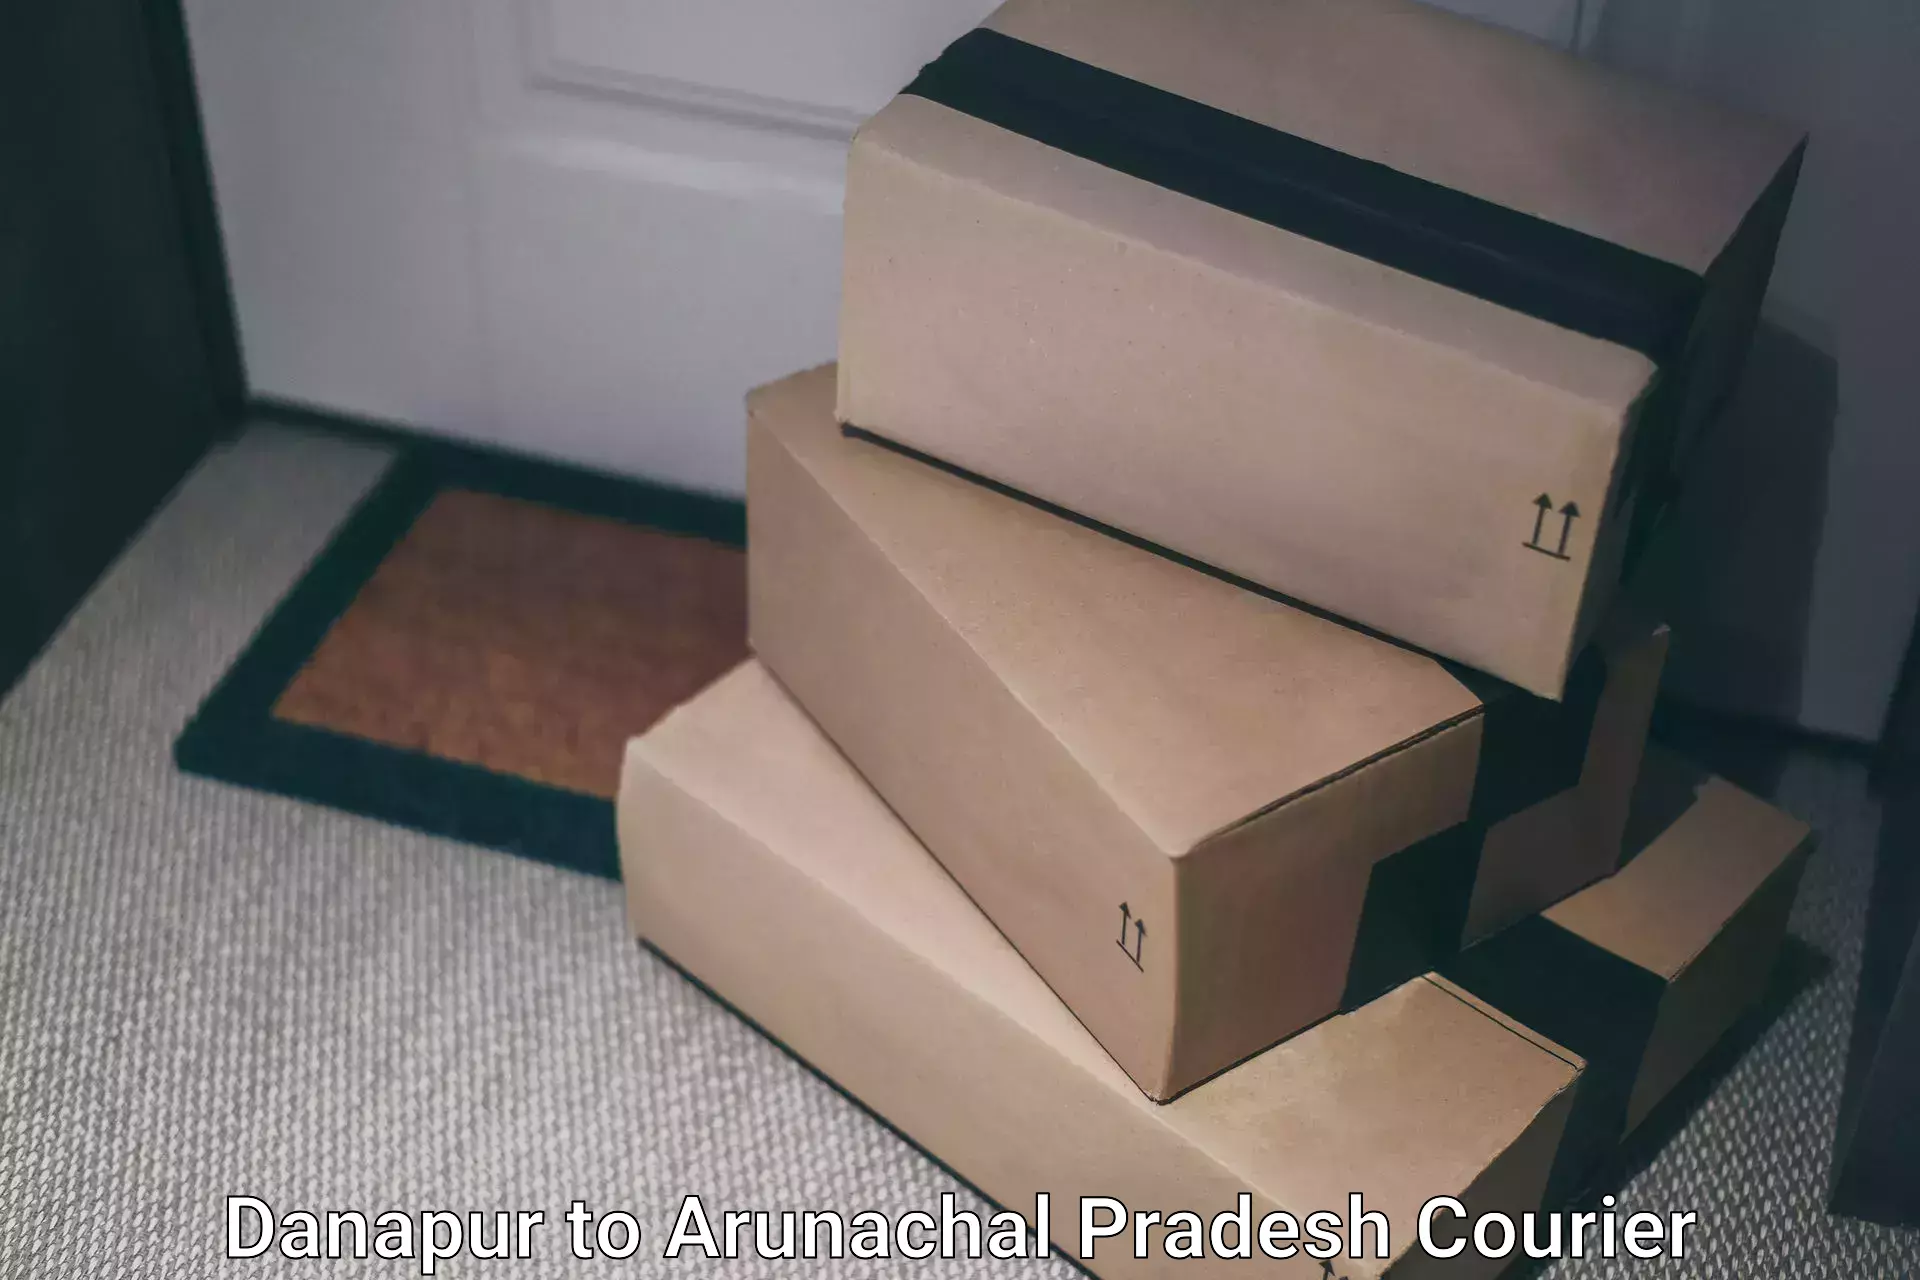 24/7 courier service Danapur to Arunachal Pradesh